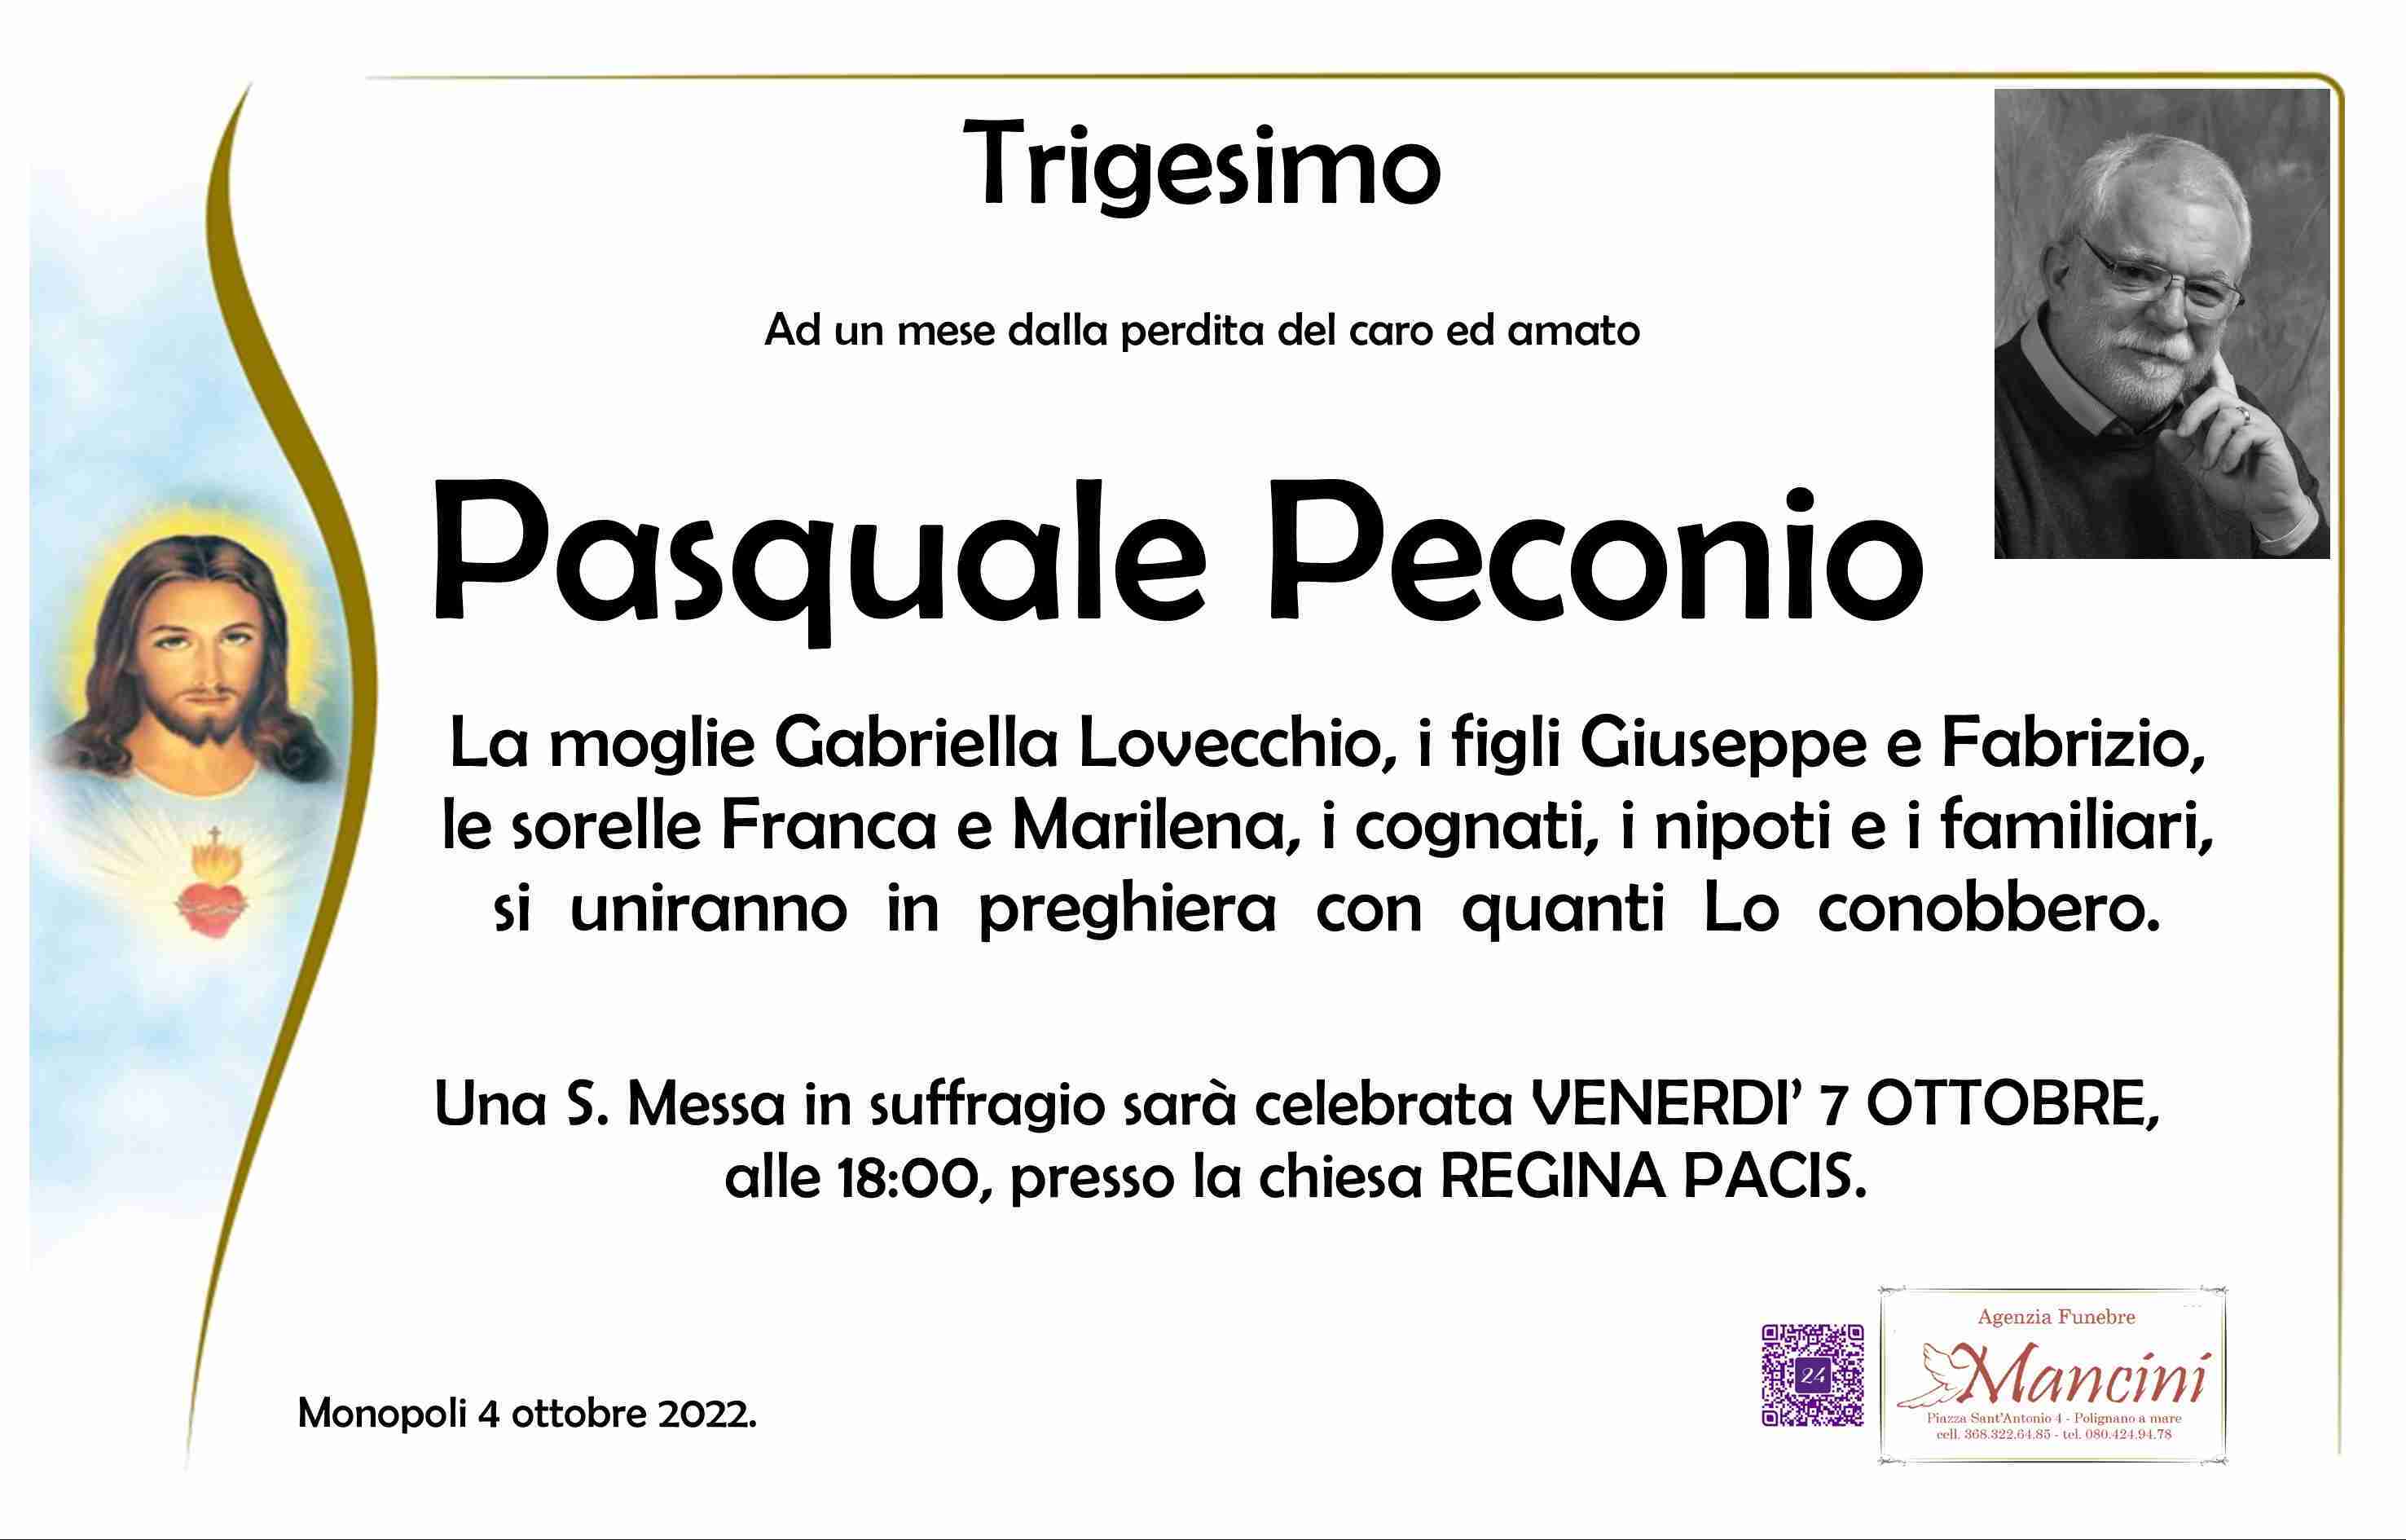 Pasquale Peconio